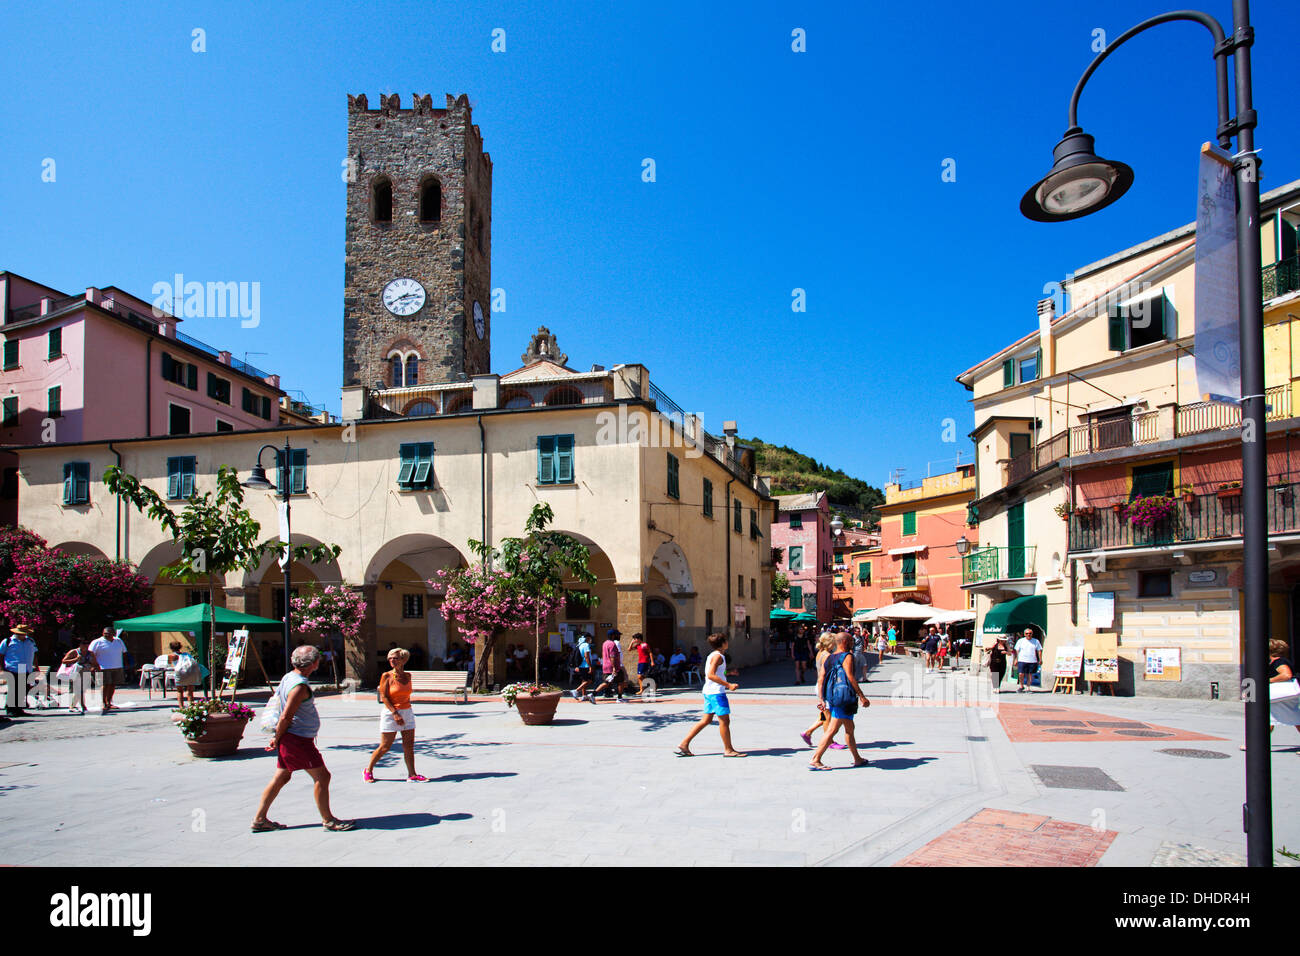 La vieille ville et l'église de Saint-Jean à Monterosso al Mare, Cinque Terre, UNESCO World Heritage Site, Ligurie, Italie, Europe Banque D'Images